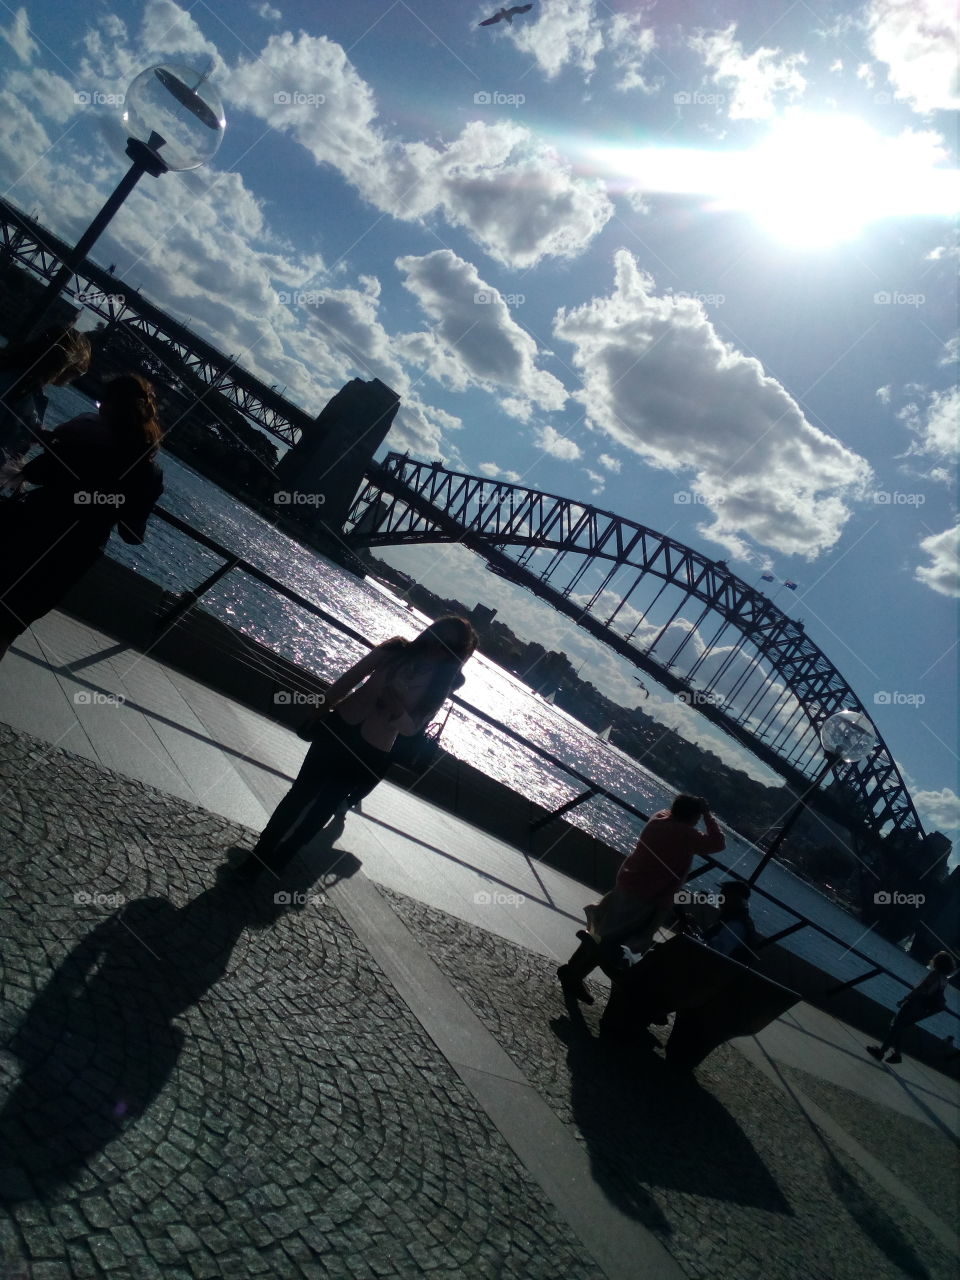 They Sydney Harbour Bridge